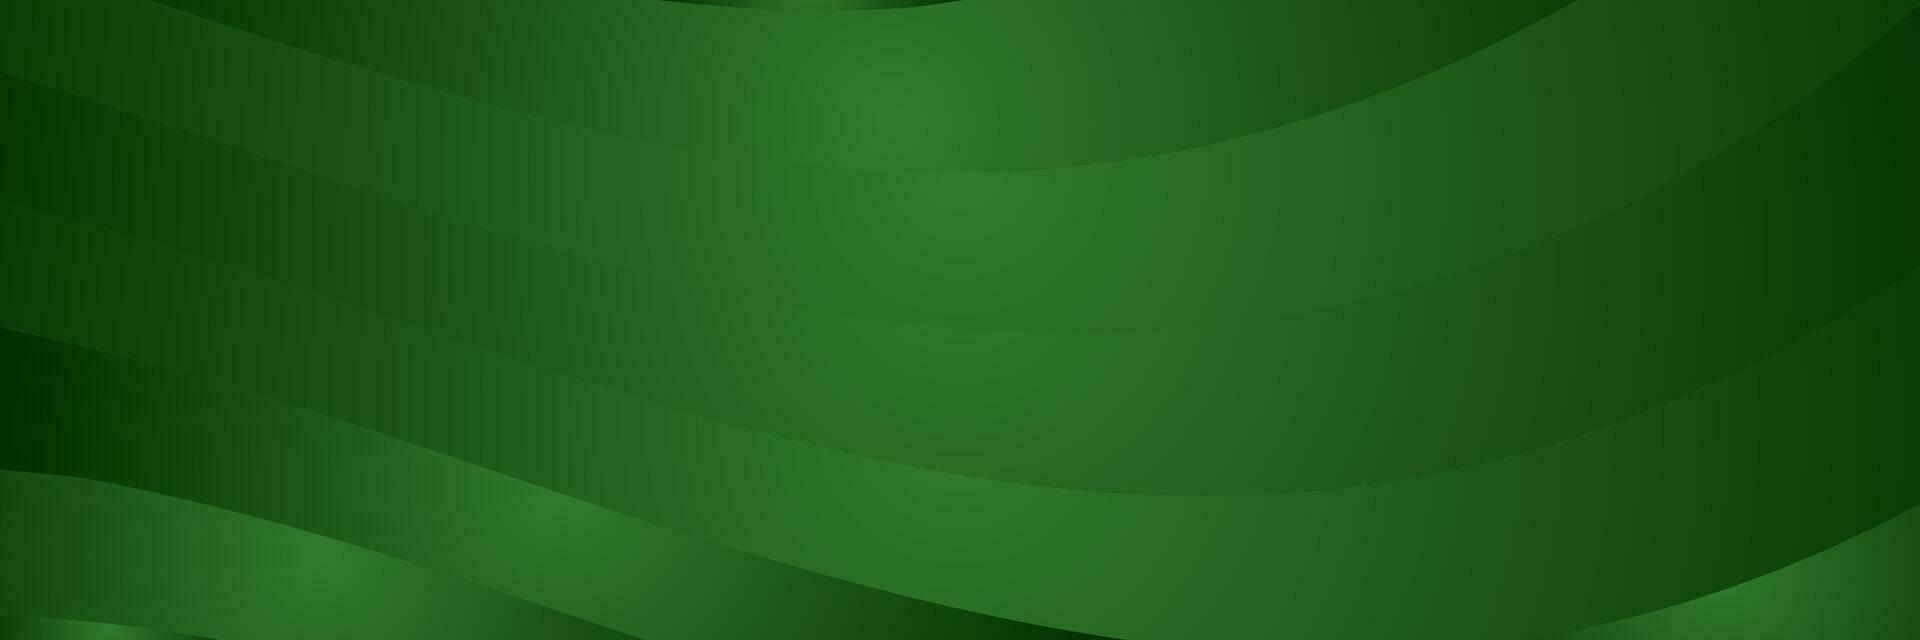 abstrakt mörk grön elegant företags- bakgrund vektor